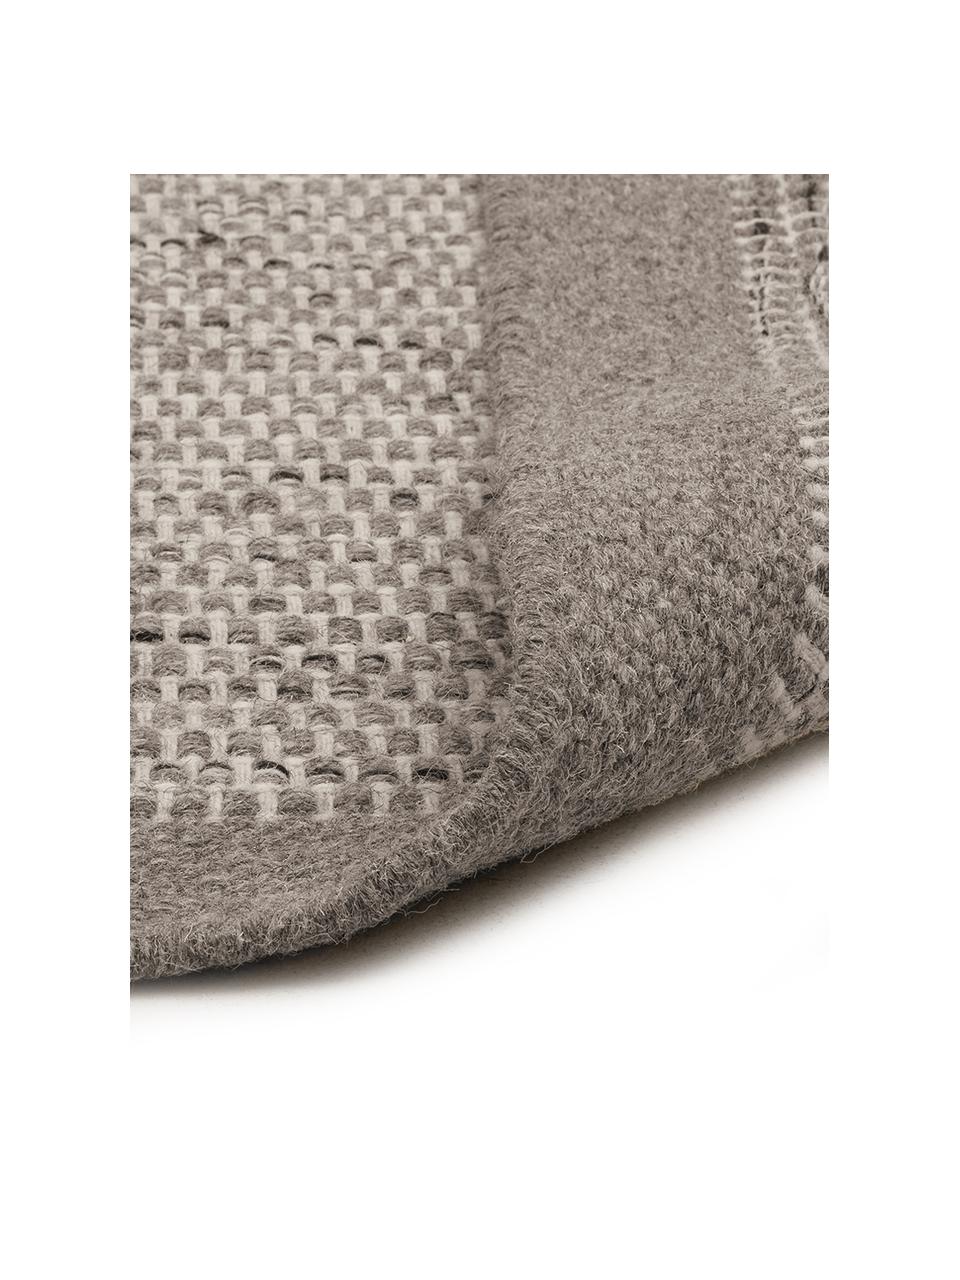 Tapis laine tons gris tissé main Asko, Gris clair, gris, larg. 170 x long. 240 cm (taille M)